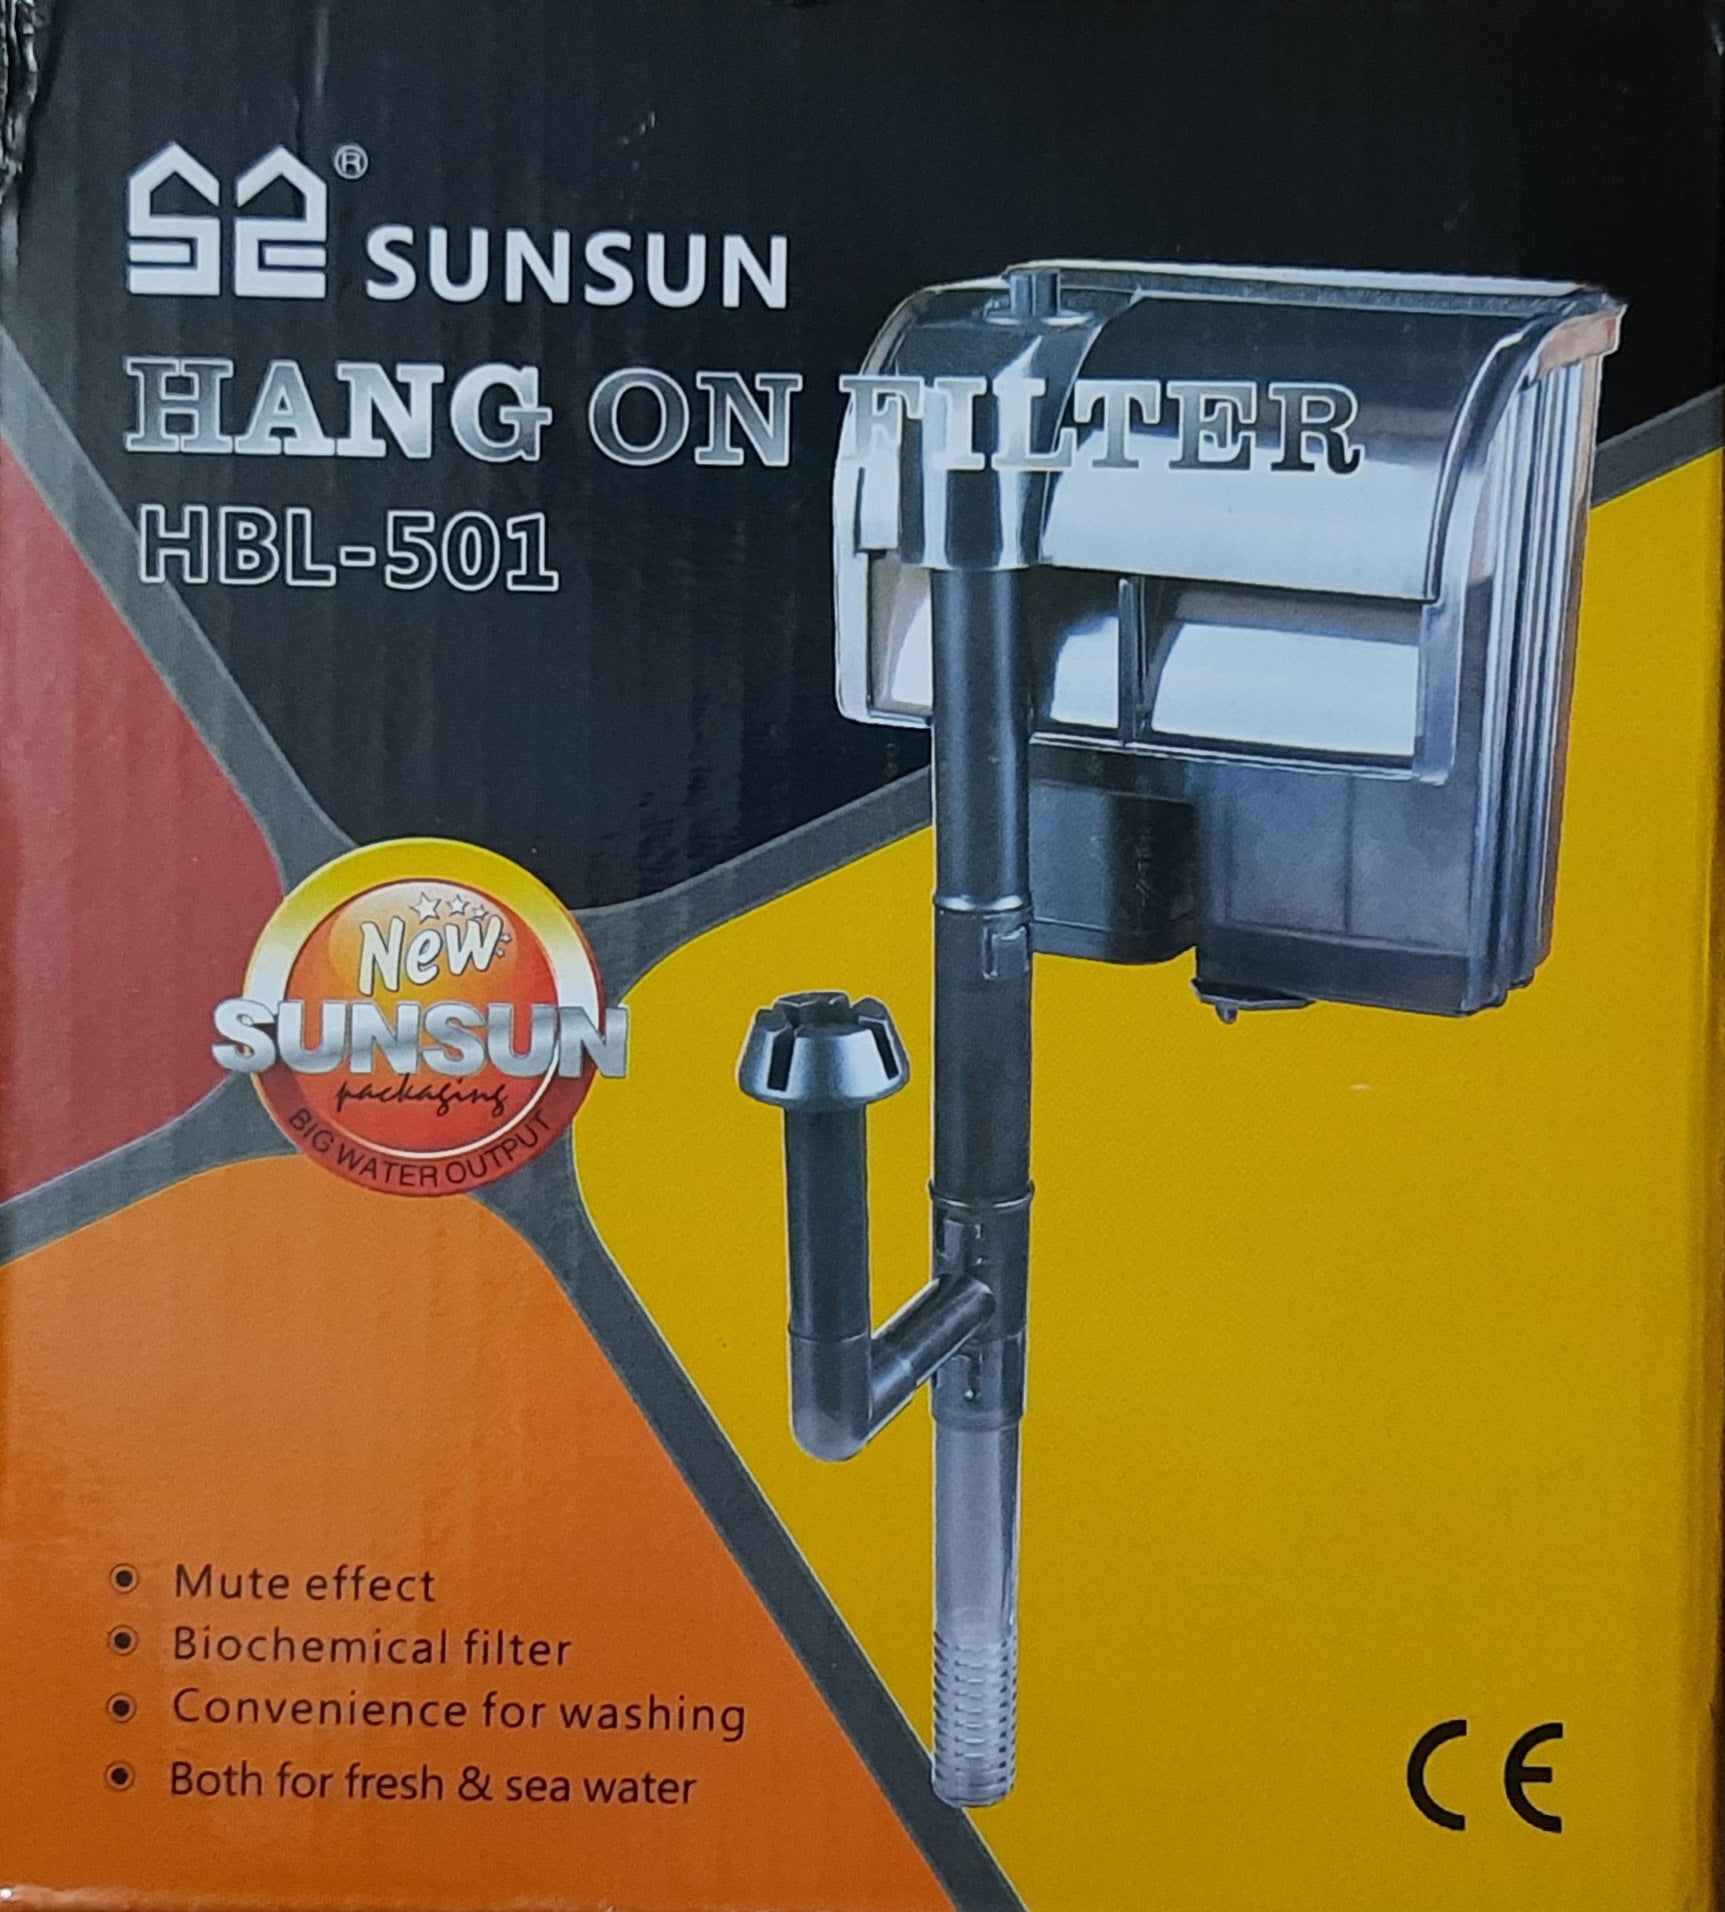 SUNSUN HBL-501 Hang On filter